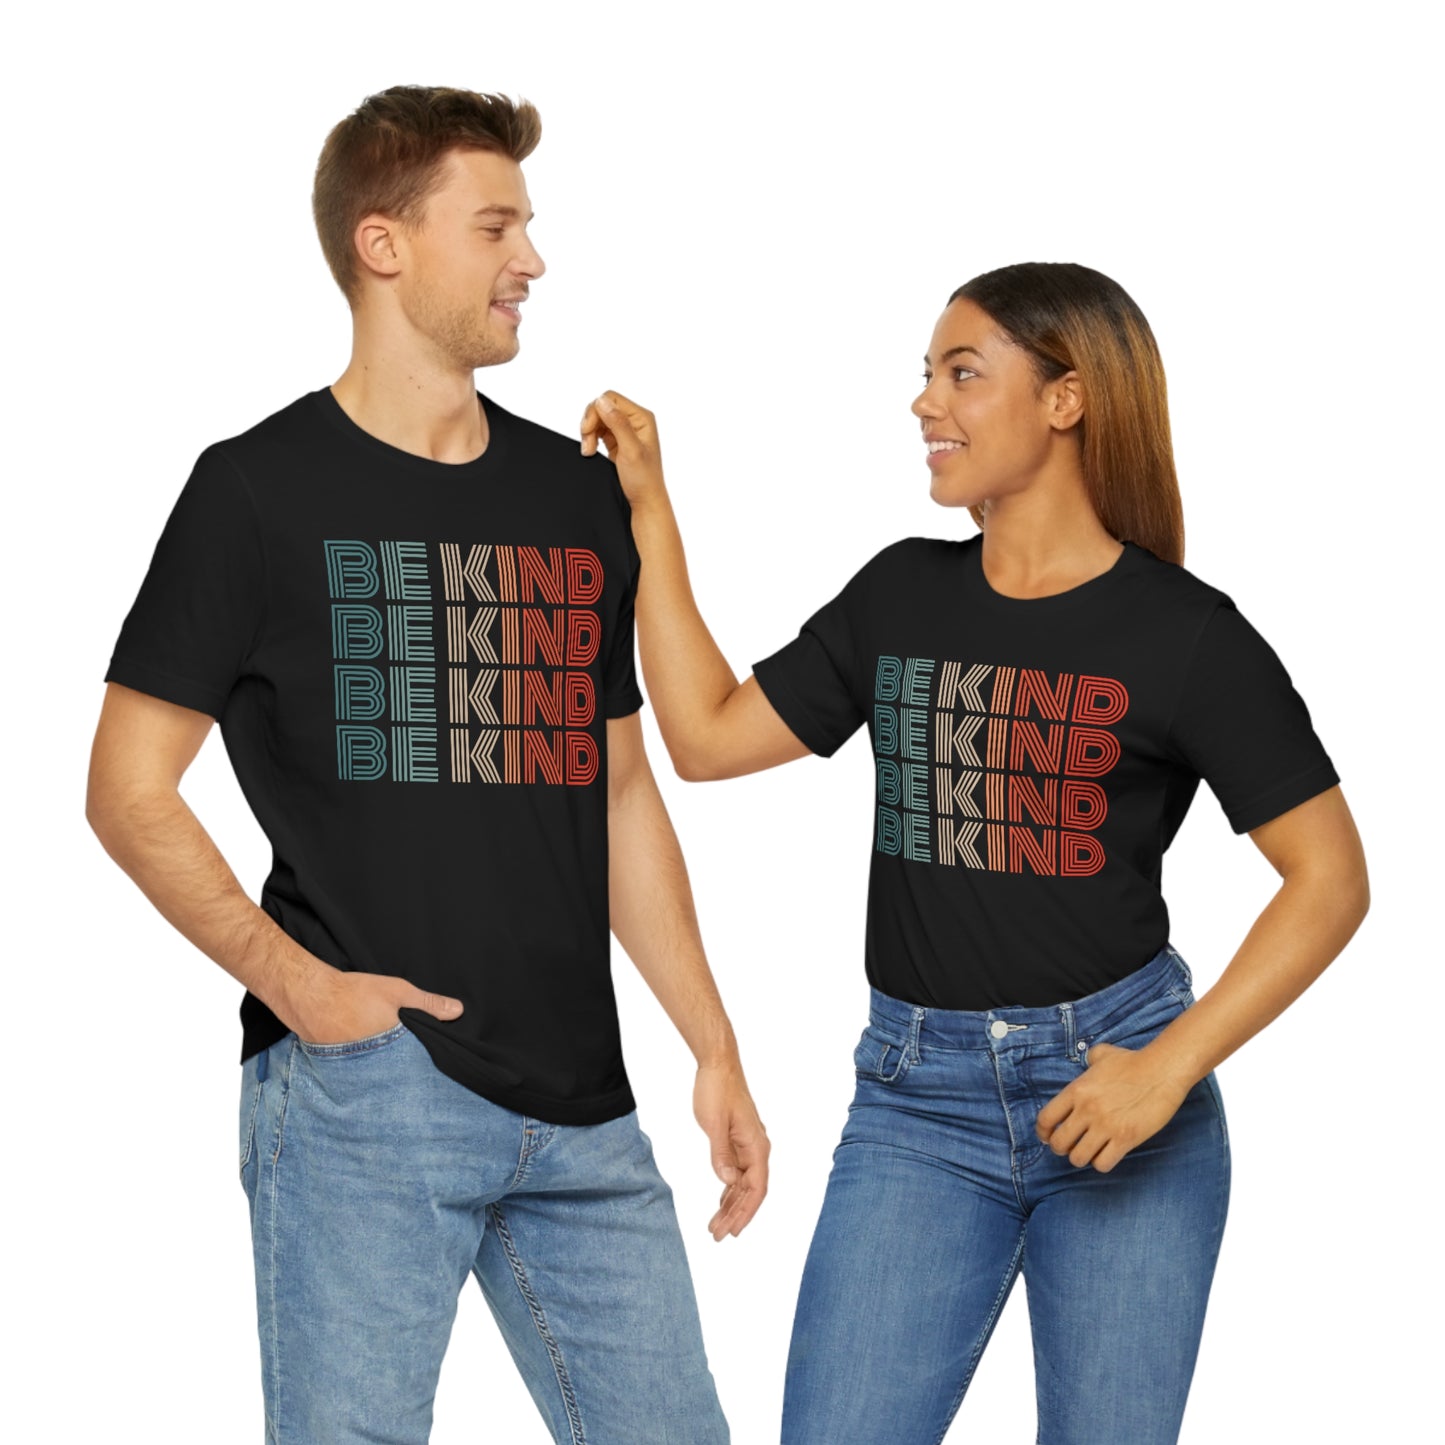 Be Kind Shirt for Women, Kindness Shirt, Retro Be Kind TShirt, Inspirational Shirt for Teachers, Cute Kindergarten Shirt, Teacher Shirt